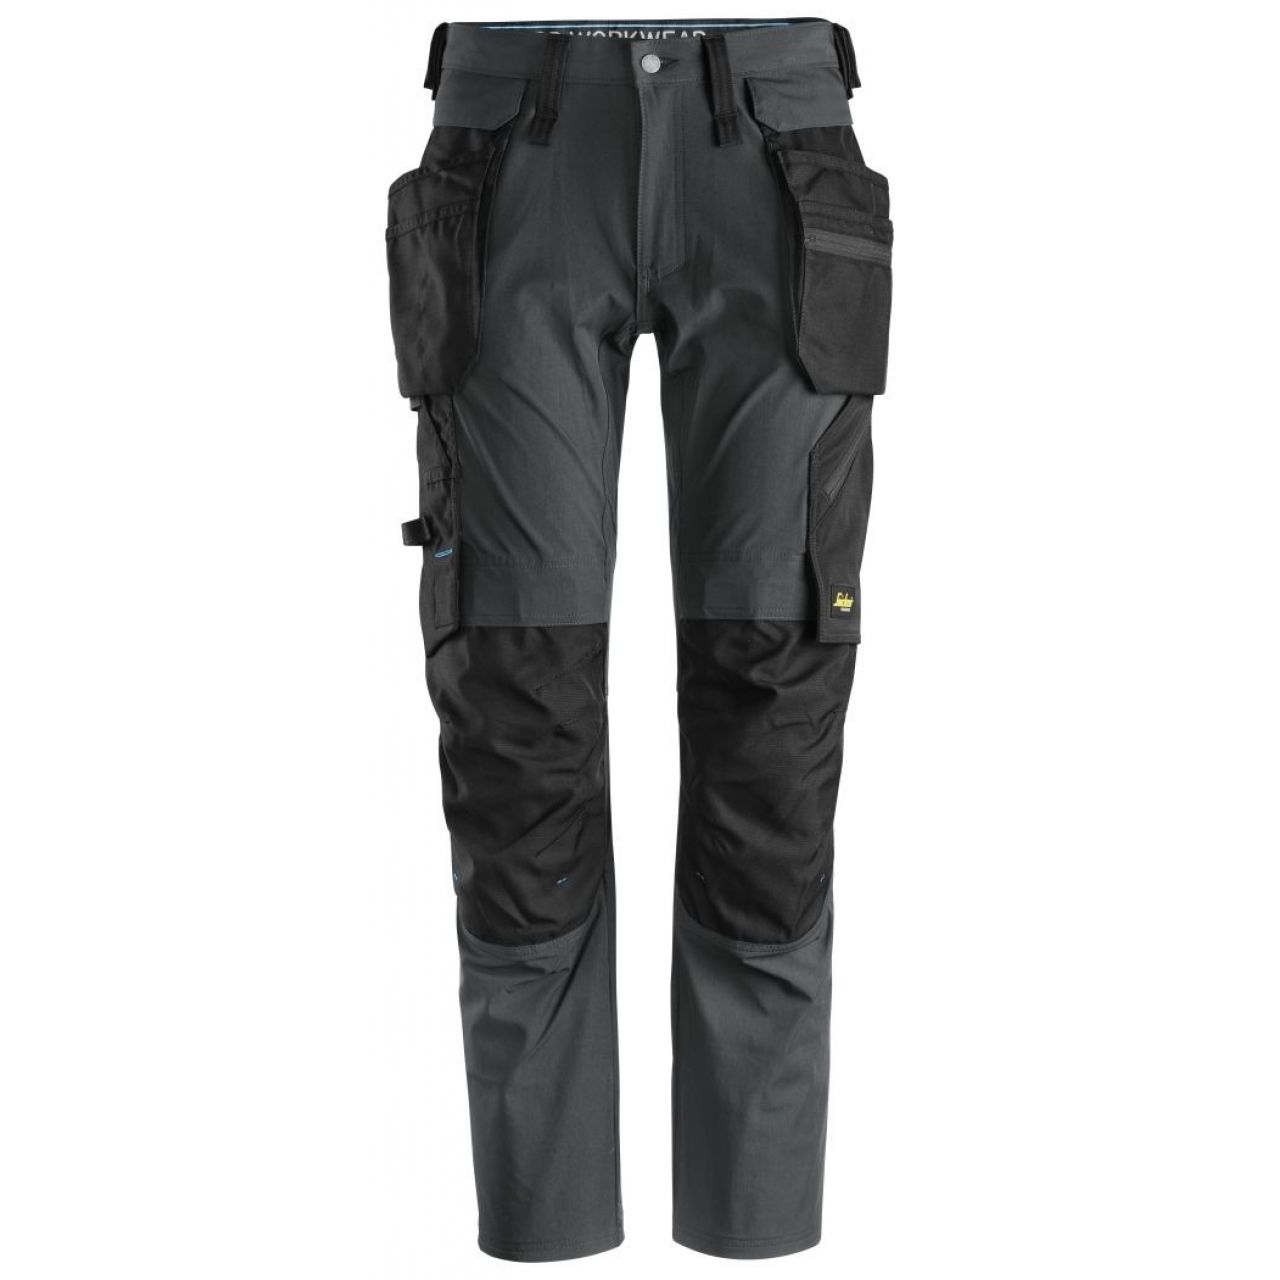 Pantalon + bolsillos flotantes desmontables LiteWork gris acero-negro talla 048